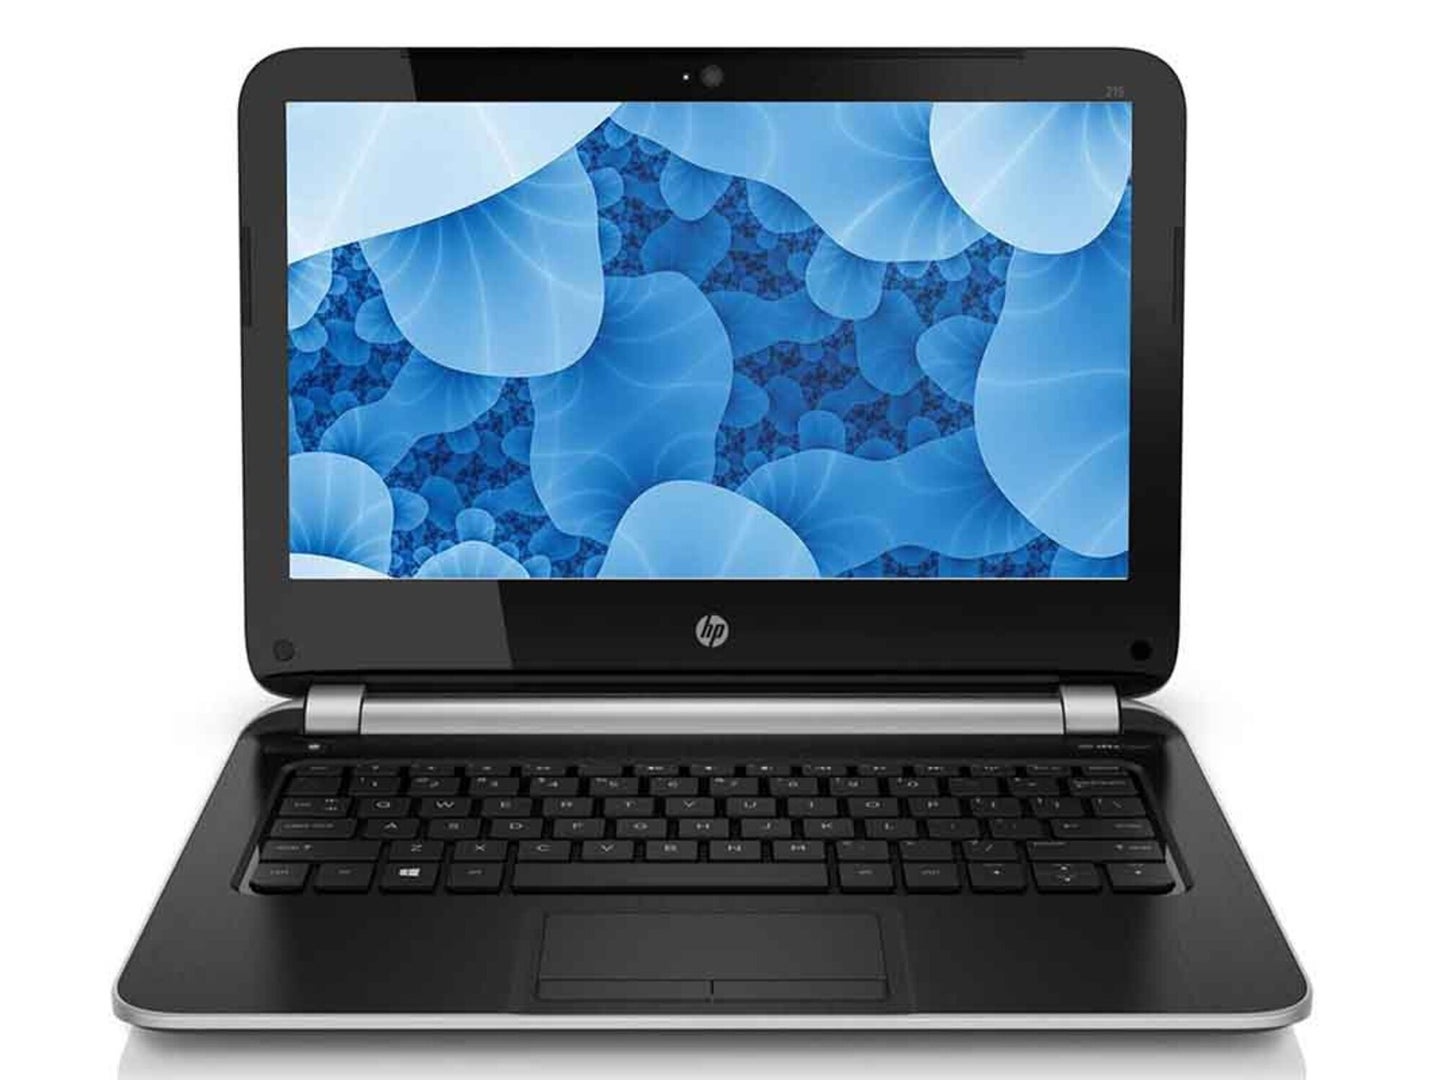 An image of an open laptop